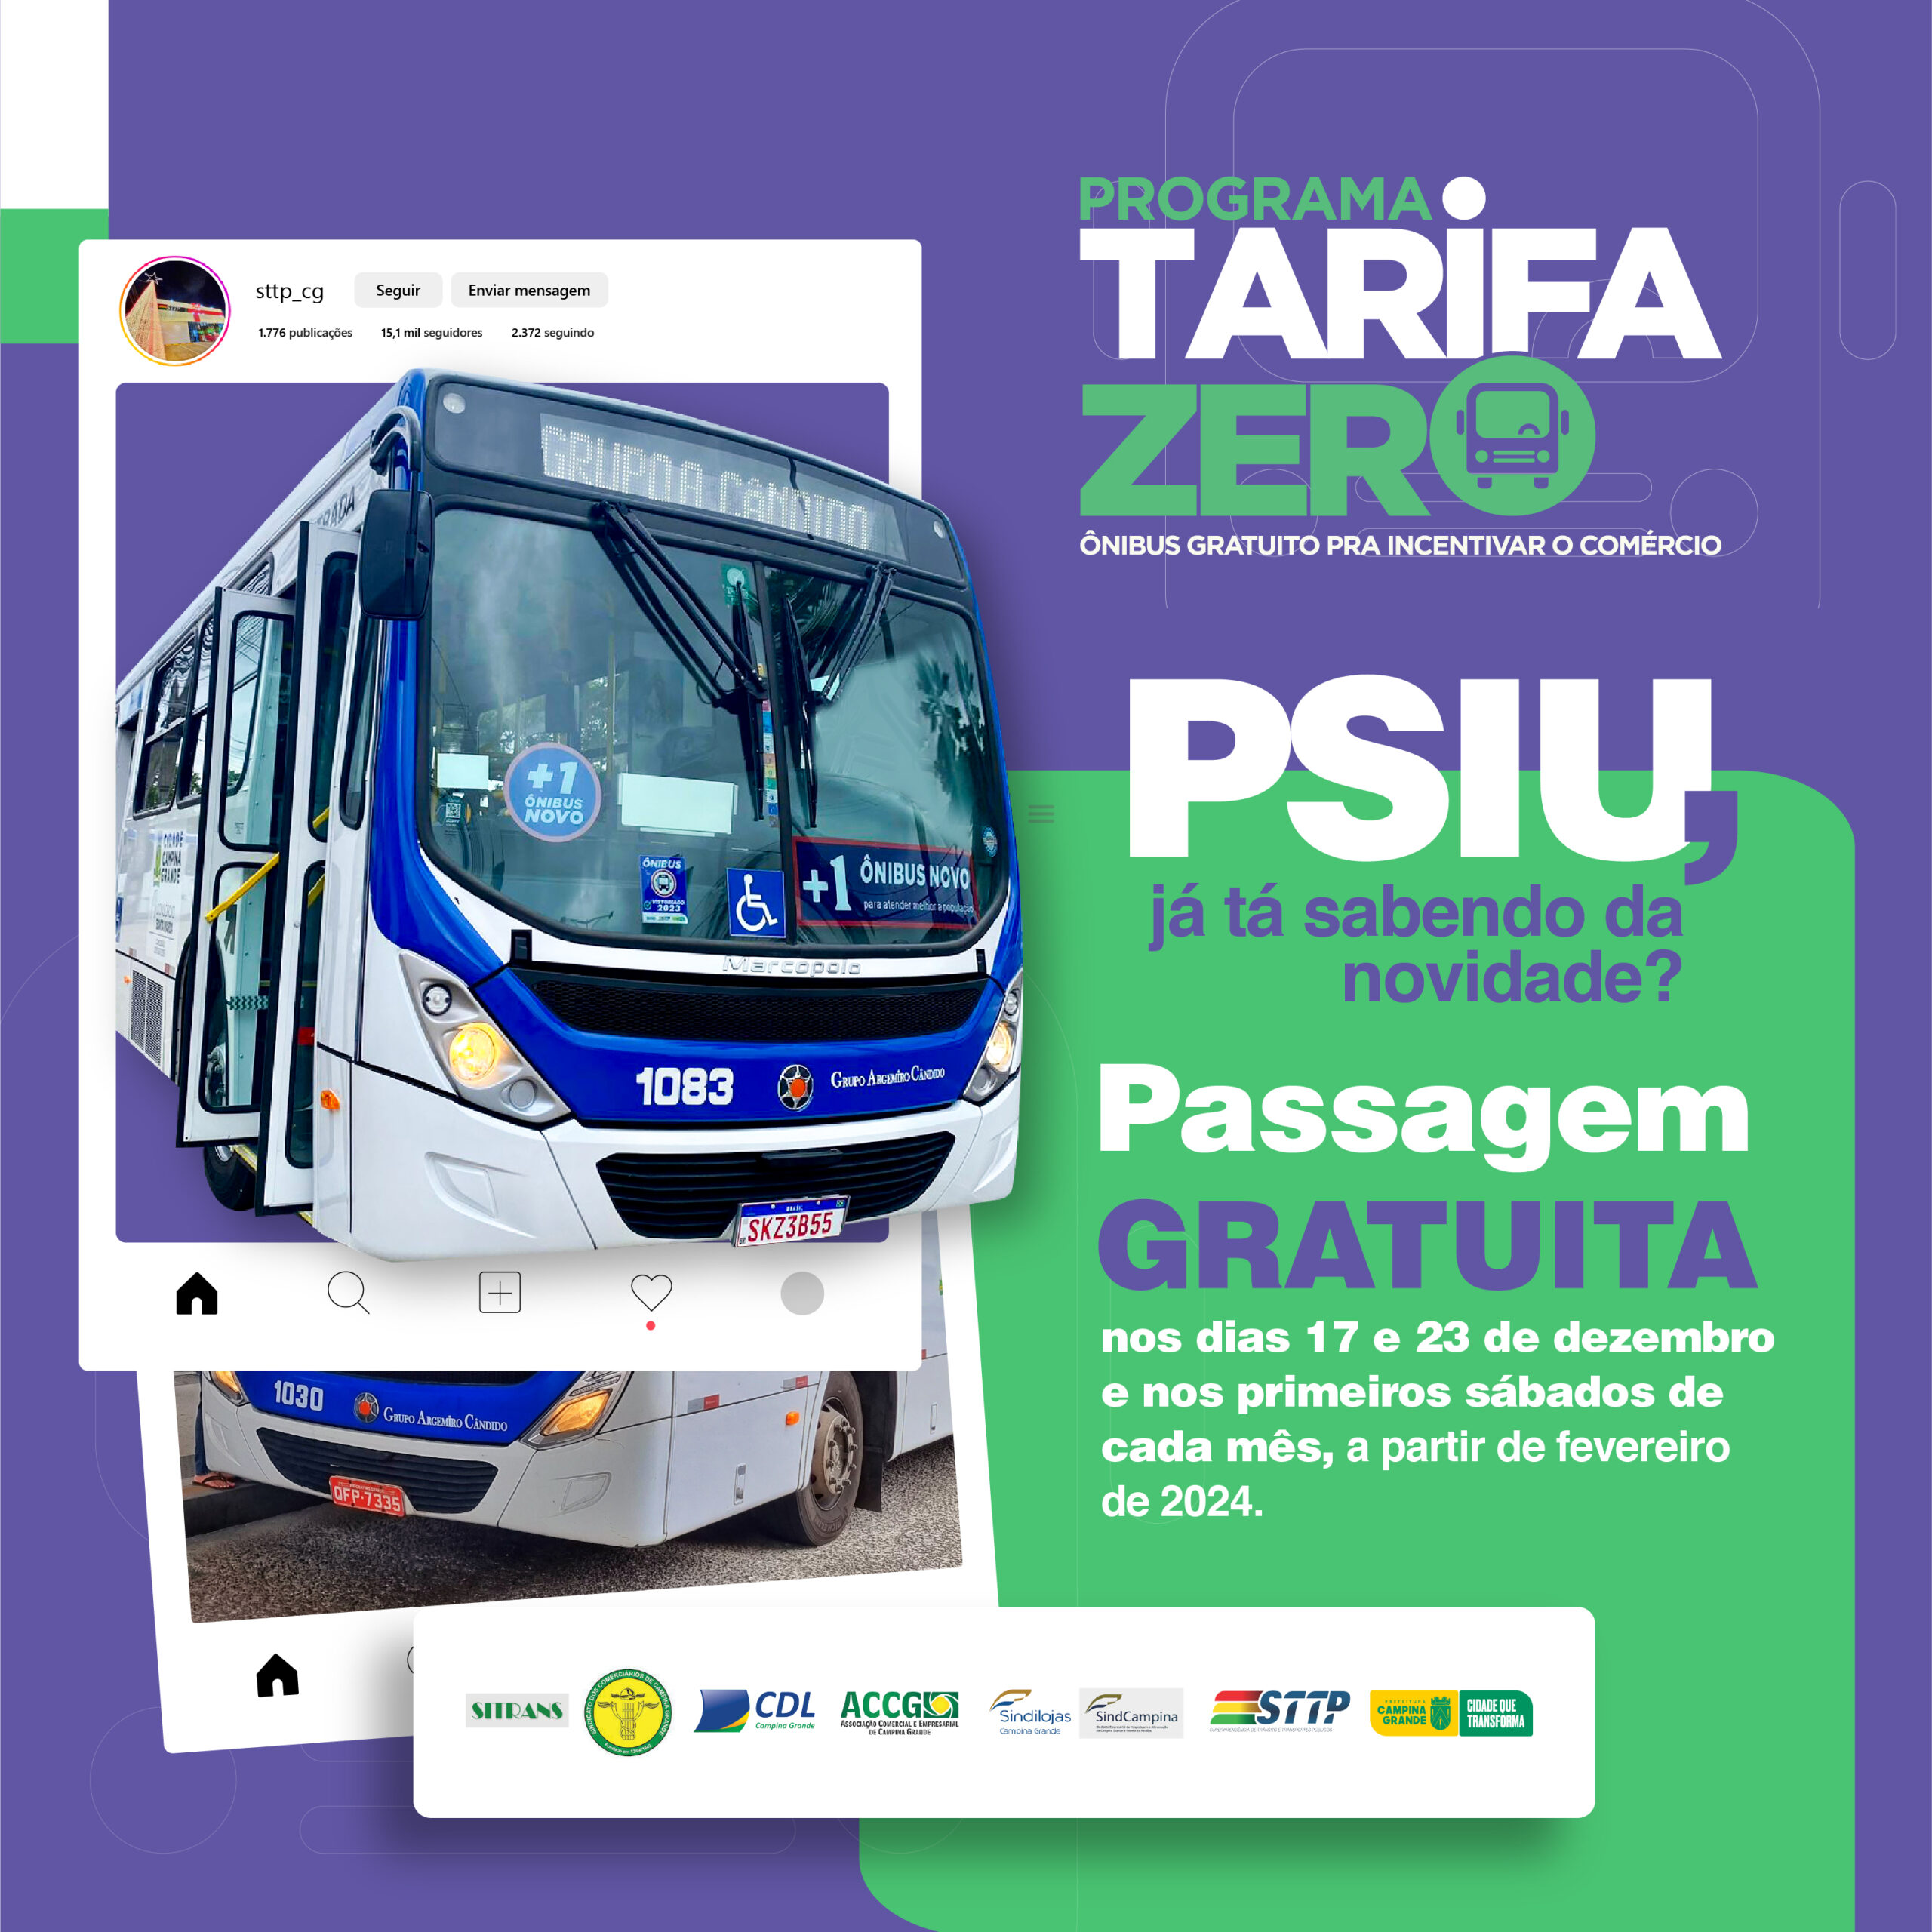 Transporte coletivo terá “Tarifa Zero” neste sábado em Campina Grande – STTP | Superintendência de Transito e Transporte Públicos de Campina Grande